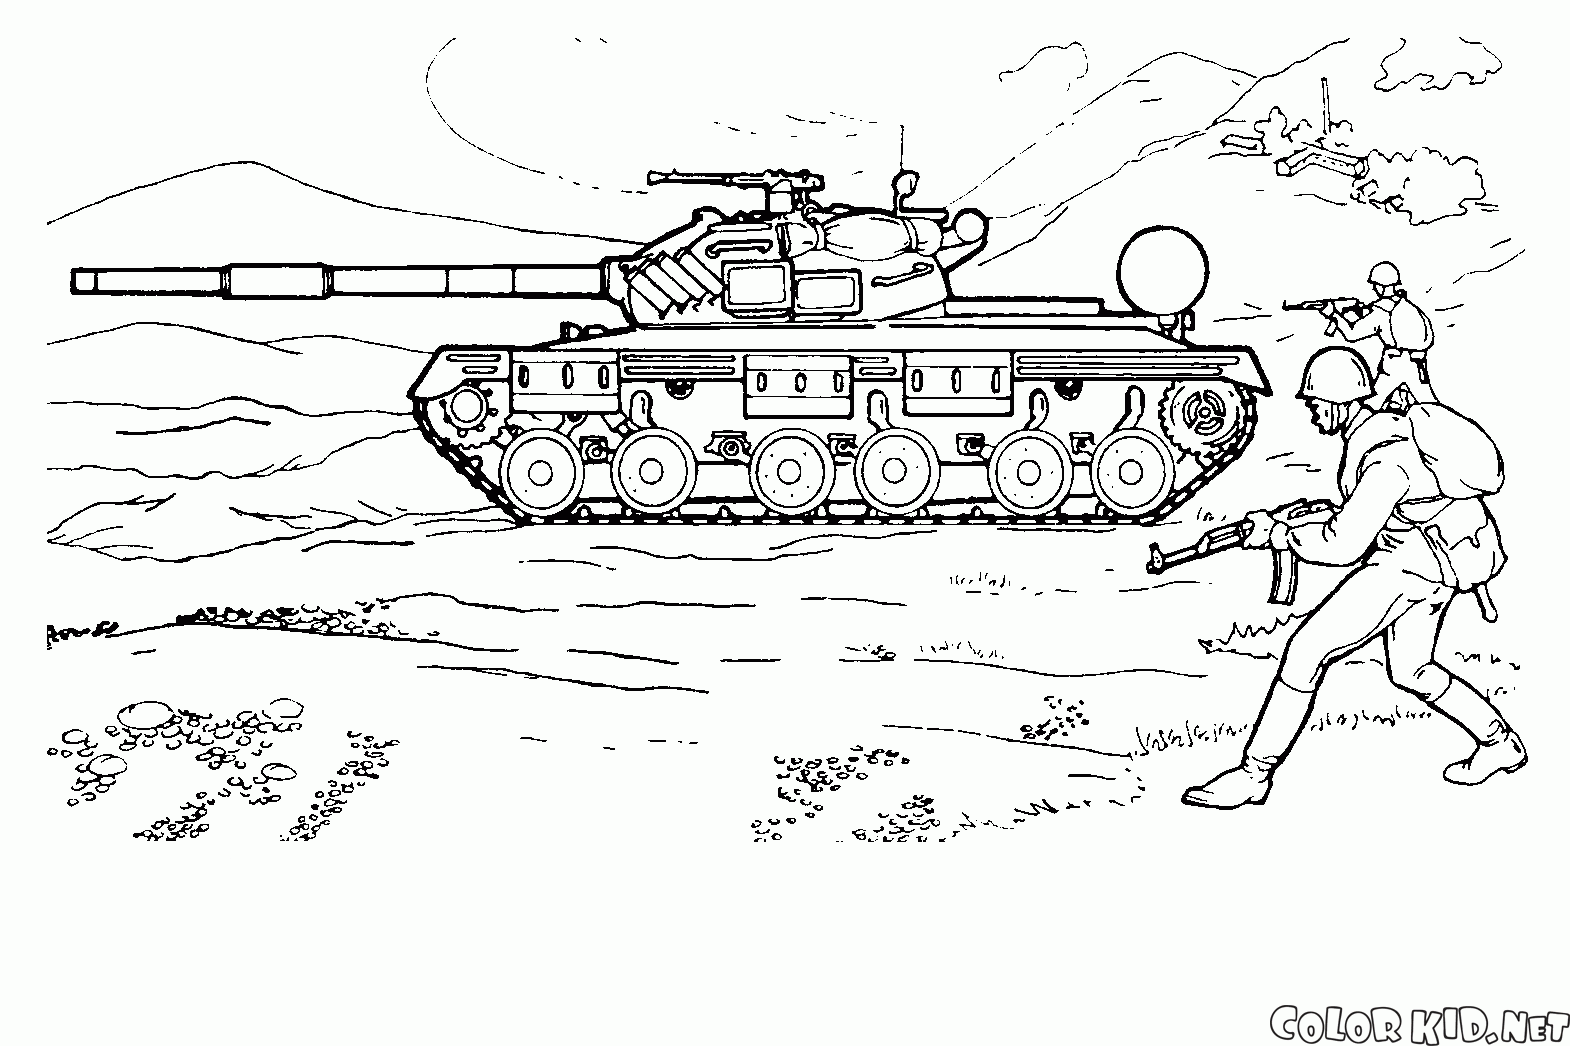 Sowjetischen Panzer auf Manöver